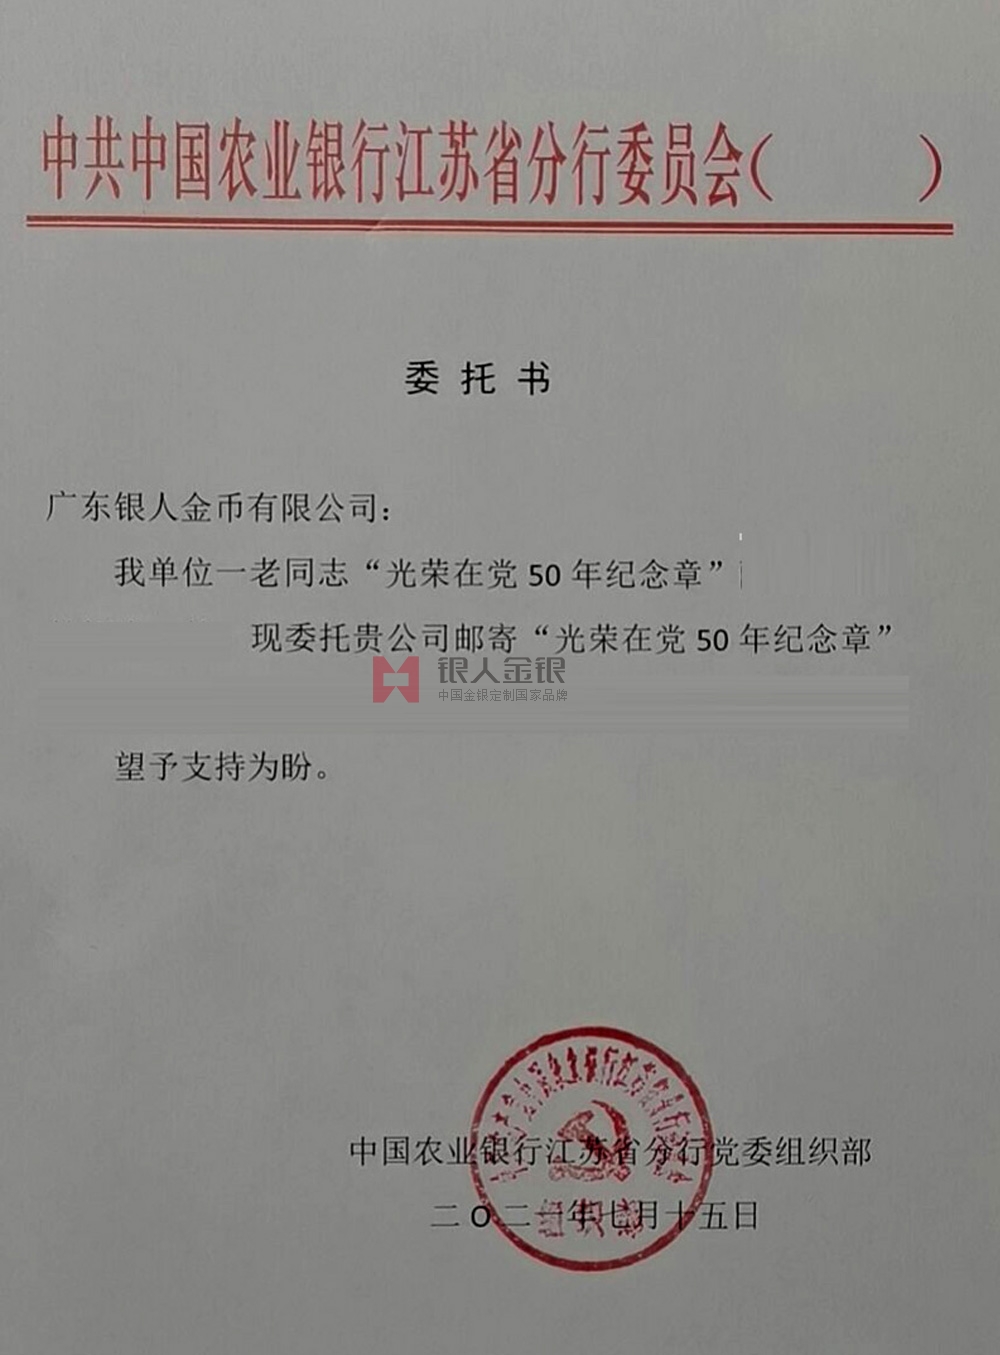 中國農業銀行江蘇省分行定制紀念章公函